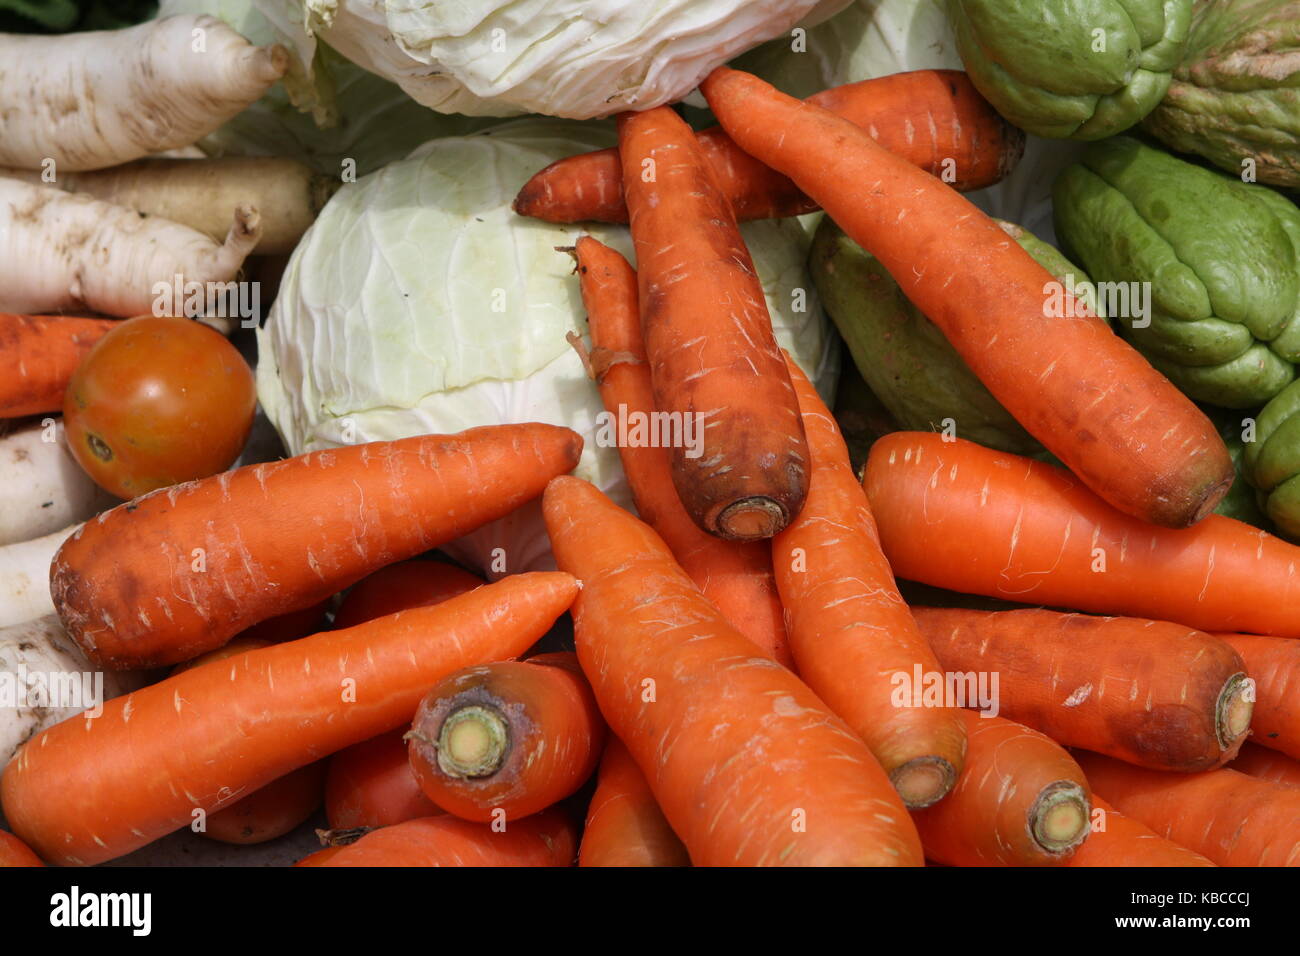 Gemüse und Karotten auf einem Marktstand Banque D'Images